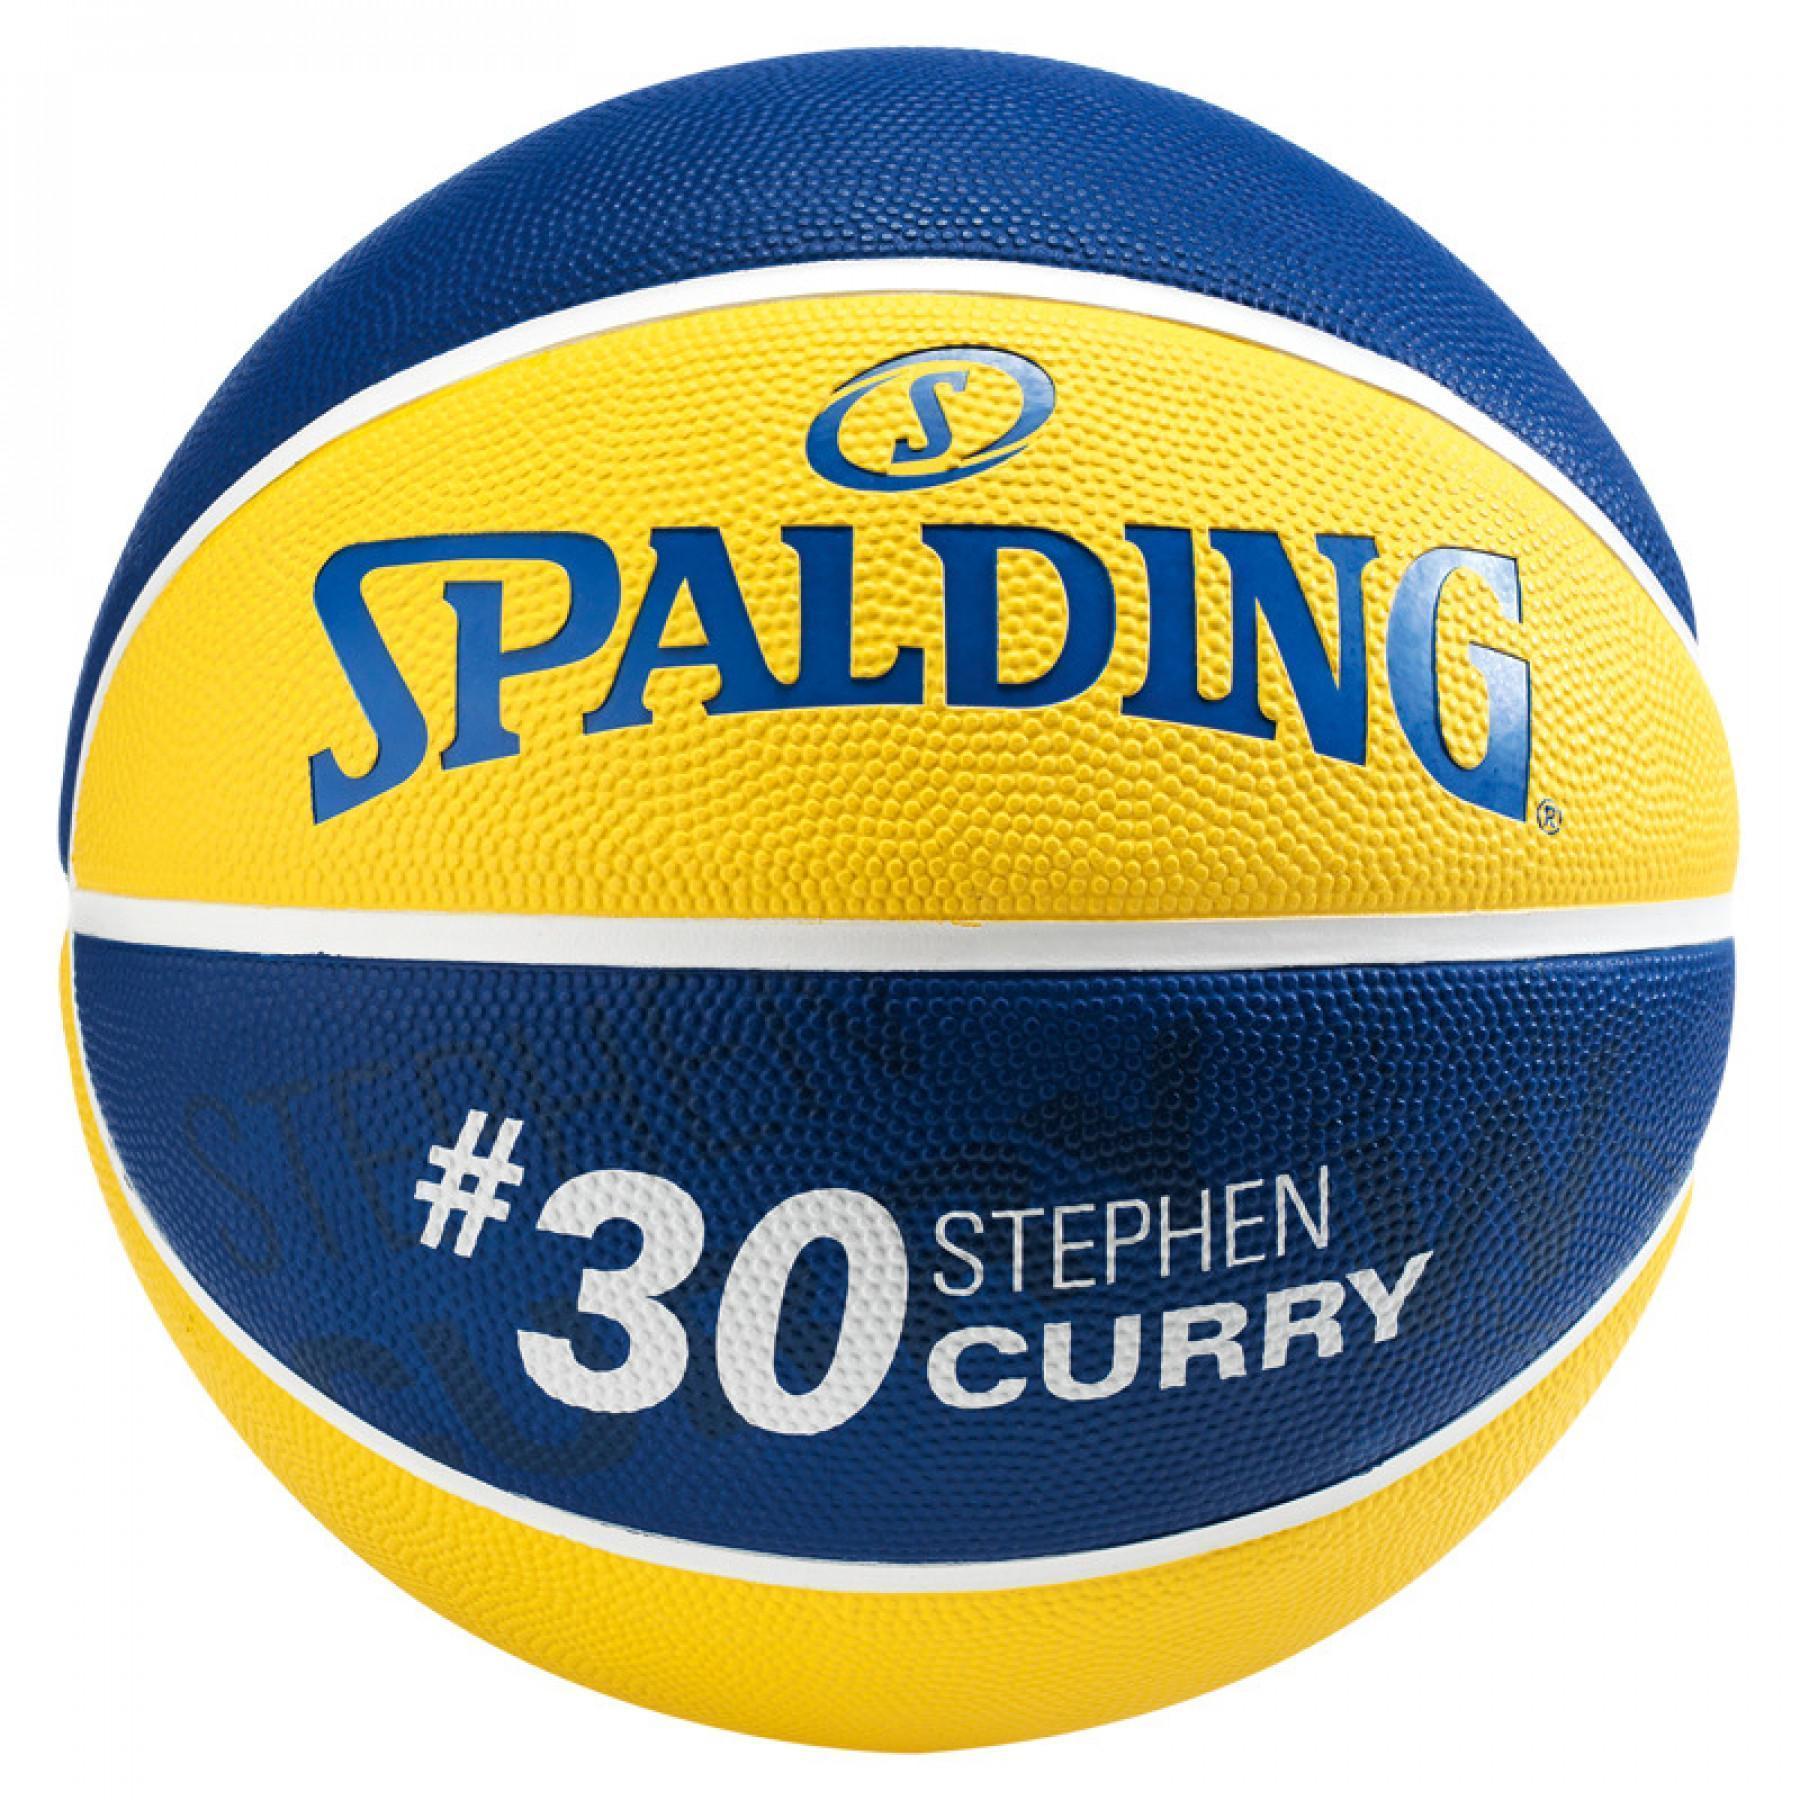 Ballon Spalding NBA Player Stephen Curry (83-844z)